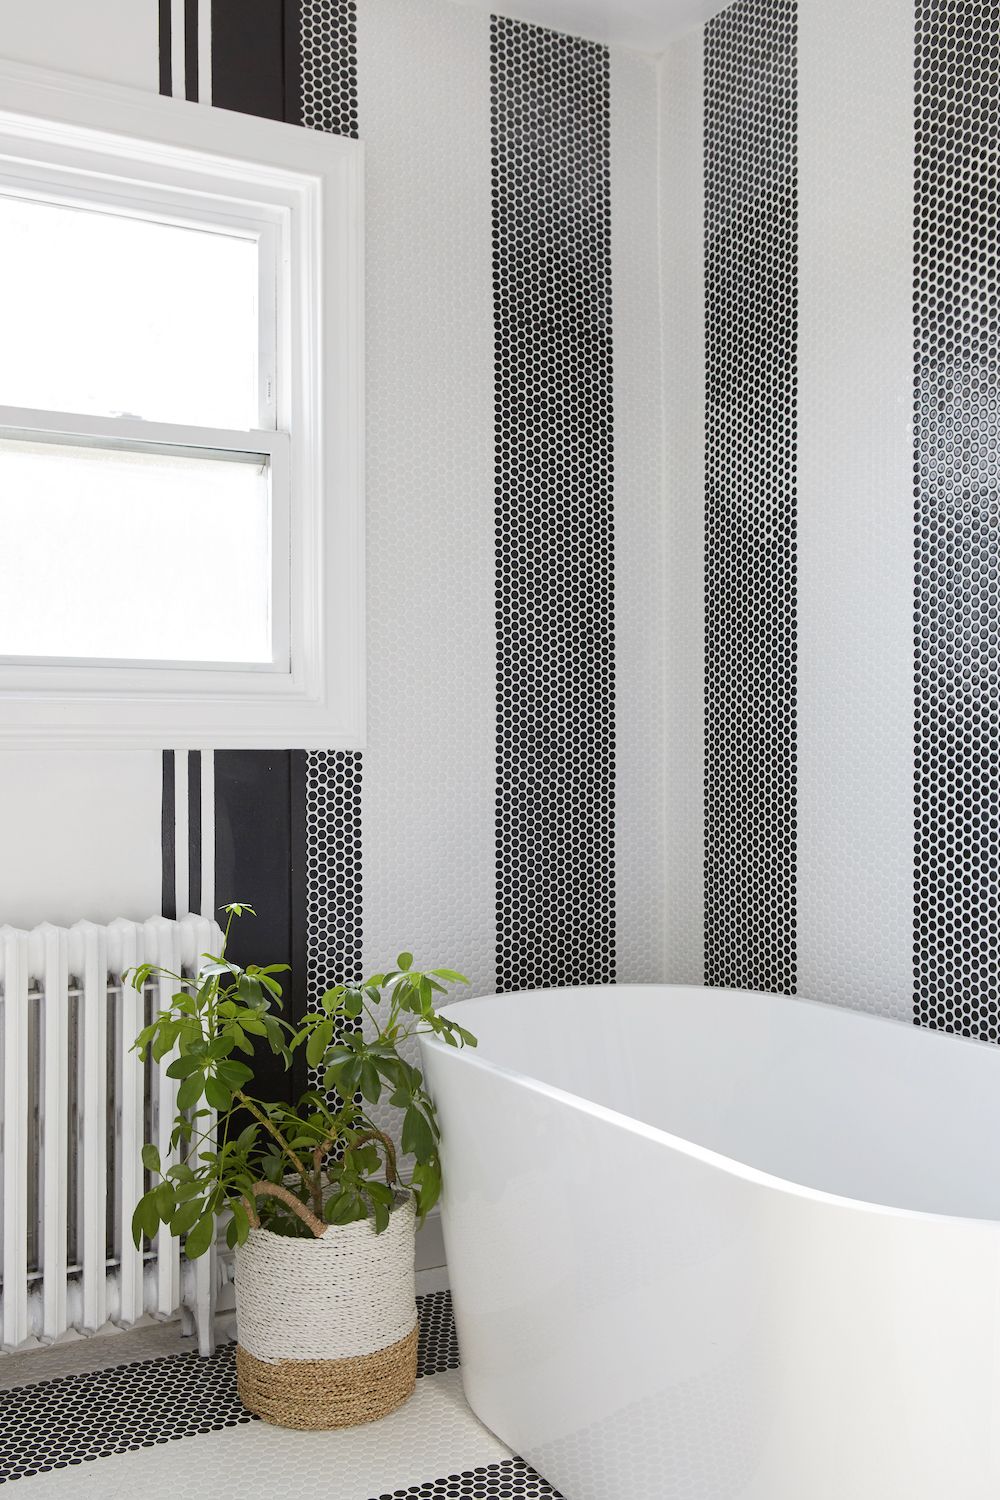 48 Bathroom Tile Ideas Bath, Bathroom Tiles Design